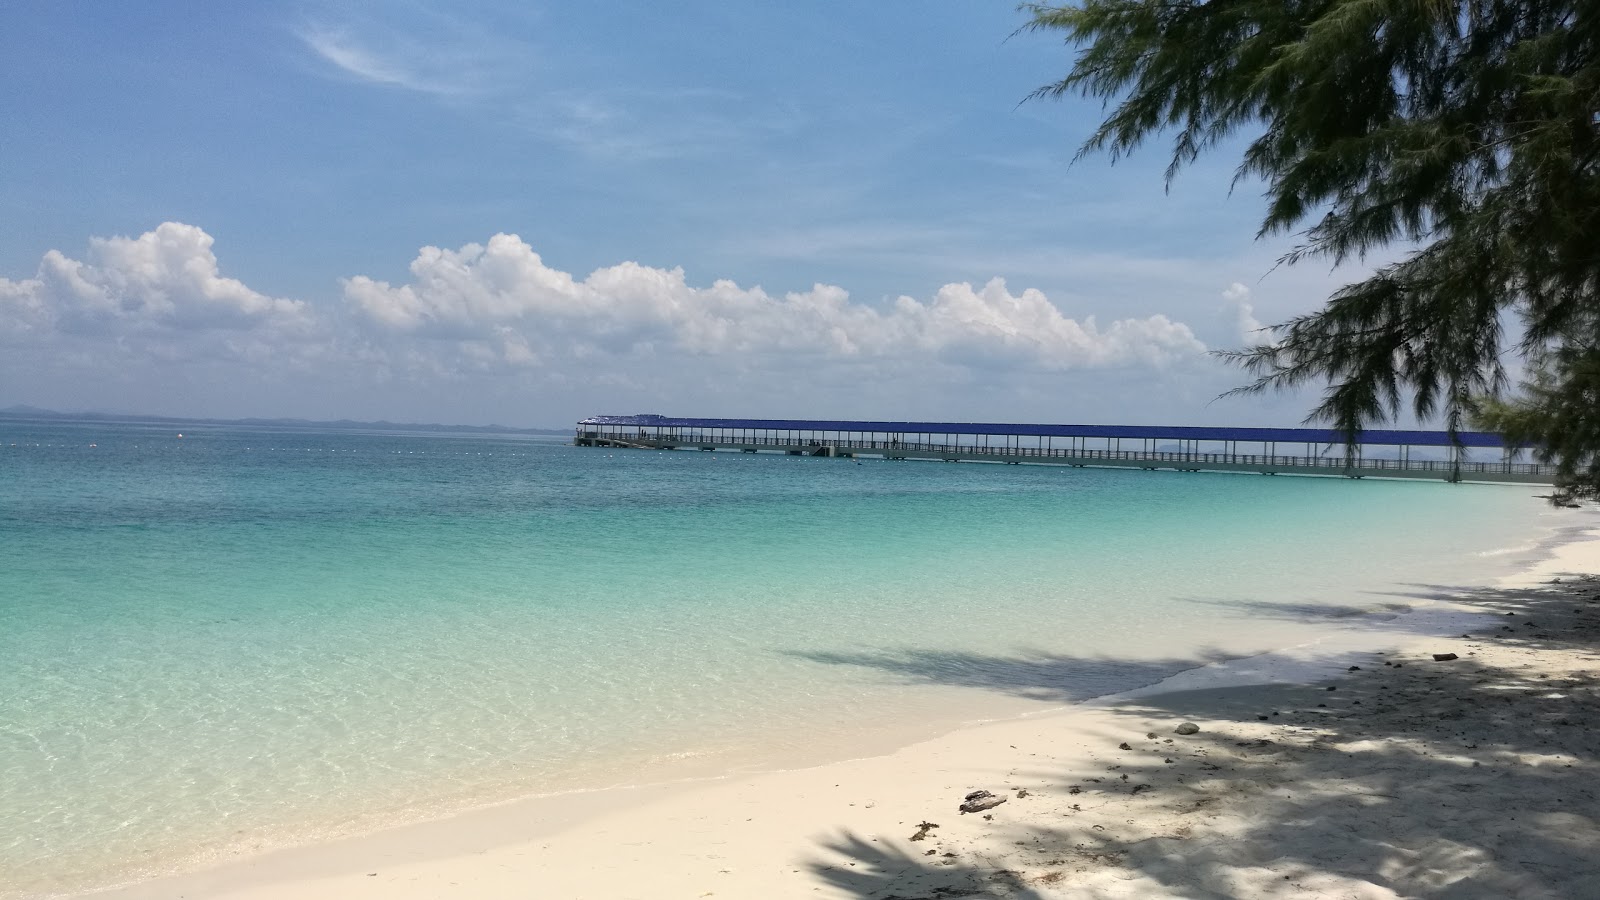 Fotografie cu Aseania Beach Resort cu drept și lung